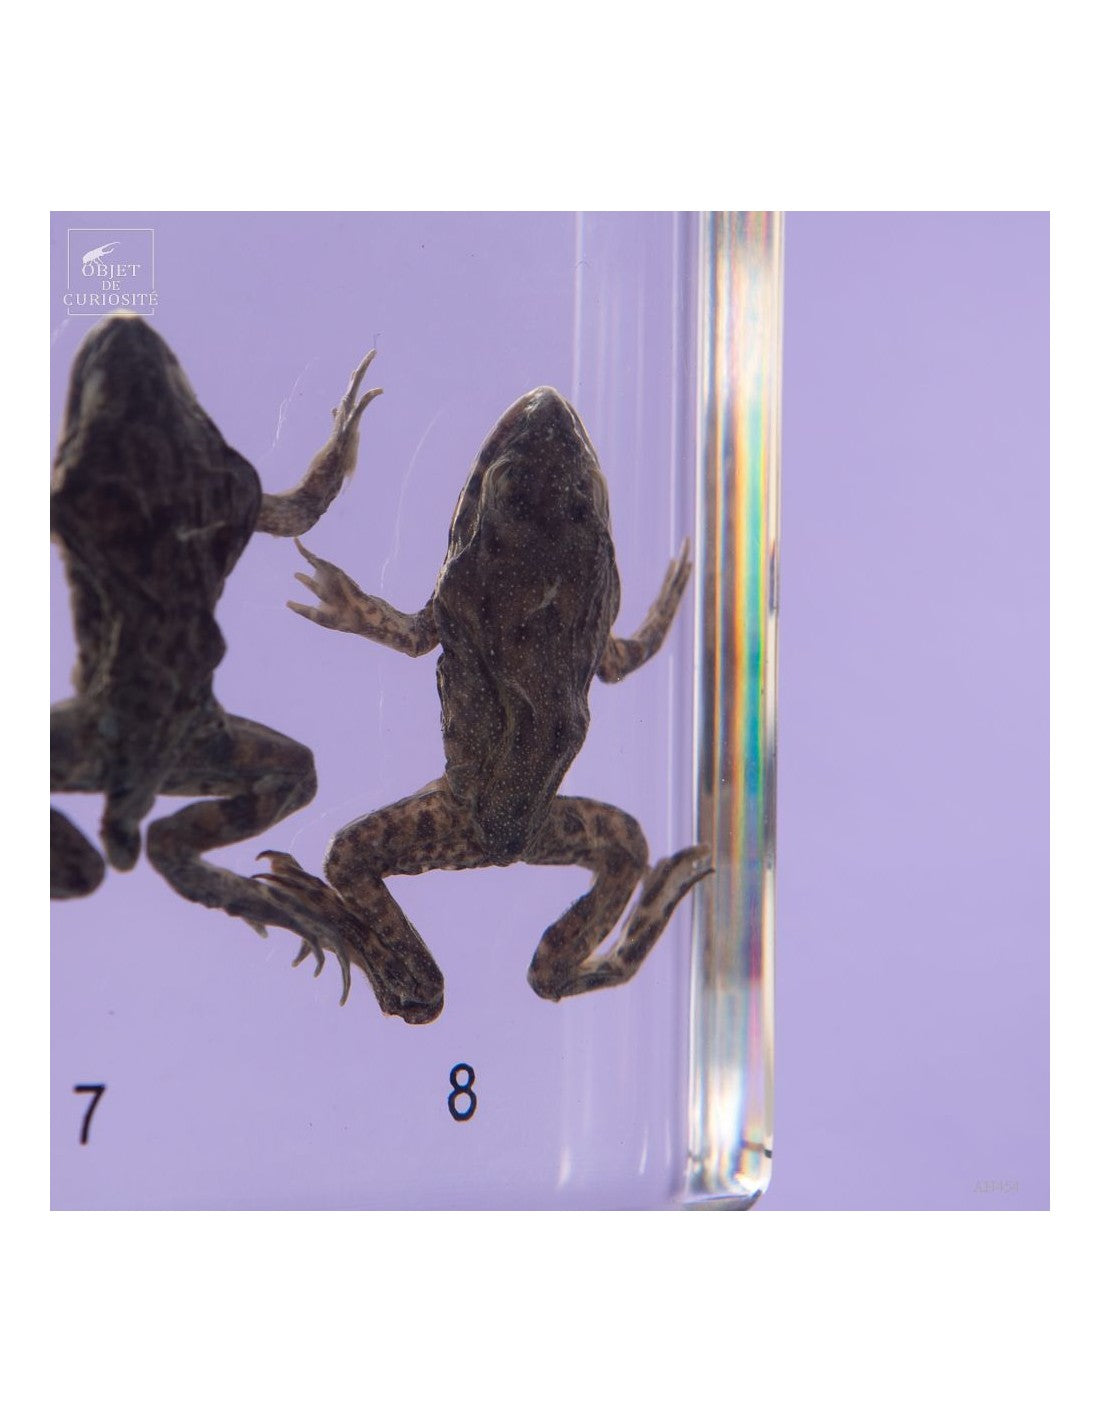 Frog development on black easel